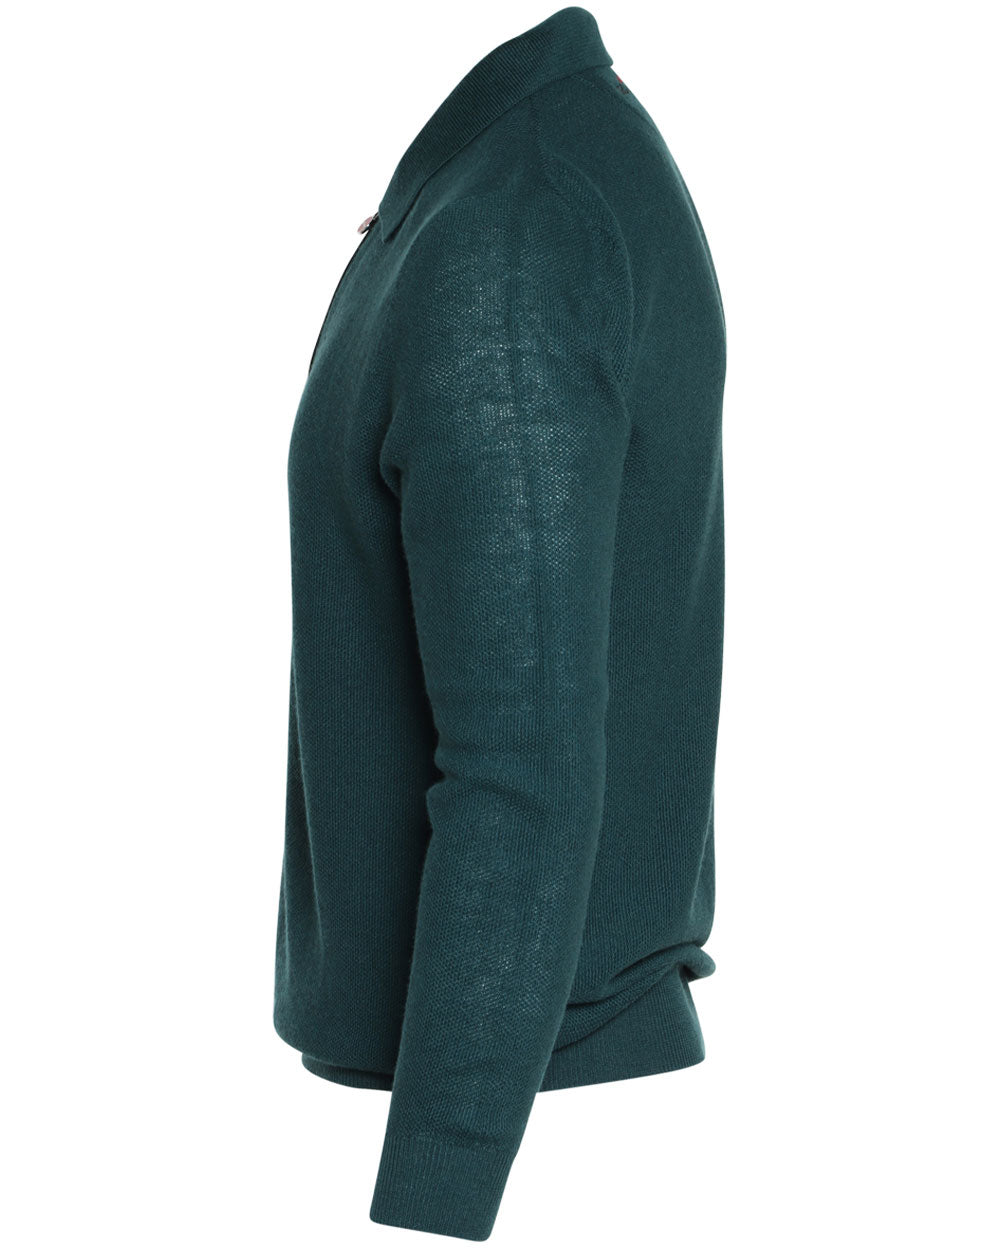 Forest Green Linen Blend Knit Quarter Zip Sweater